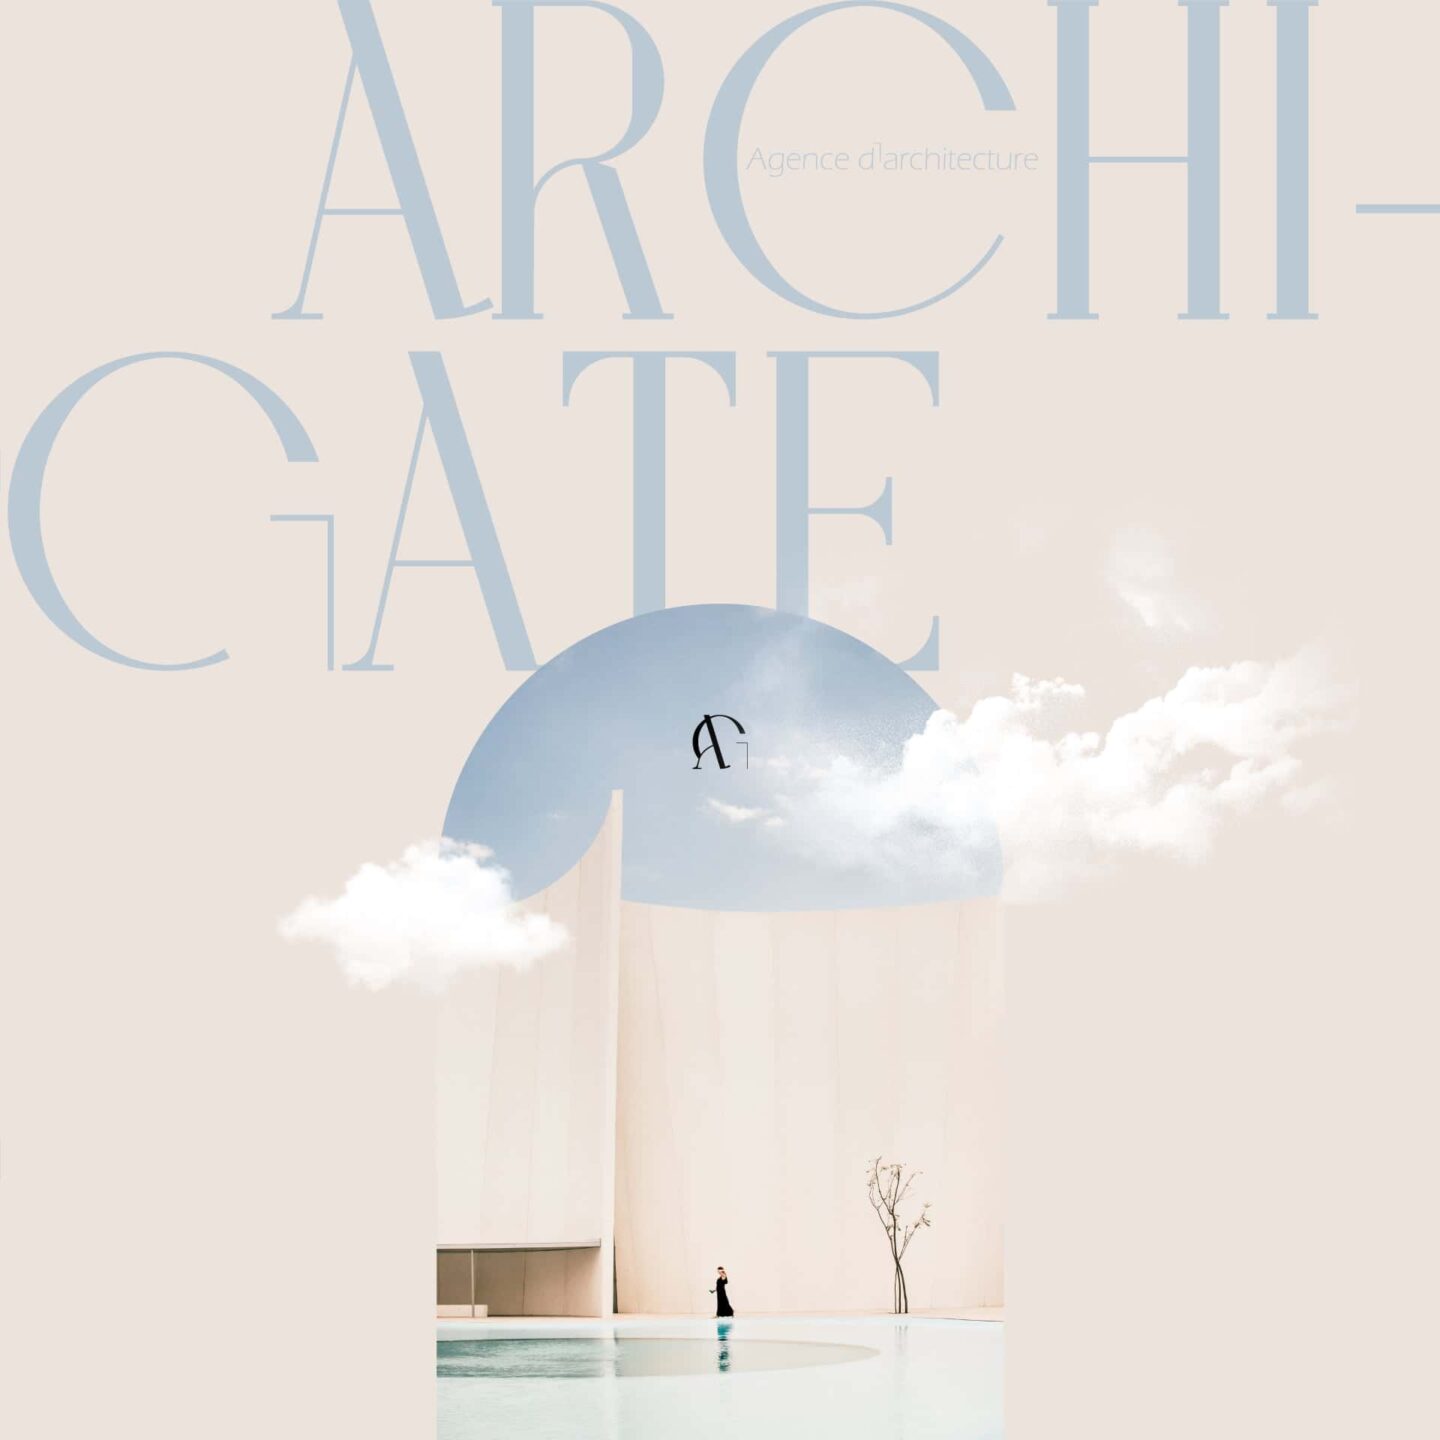 Archi-Gate Création logo architecte